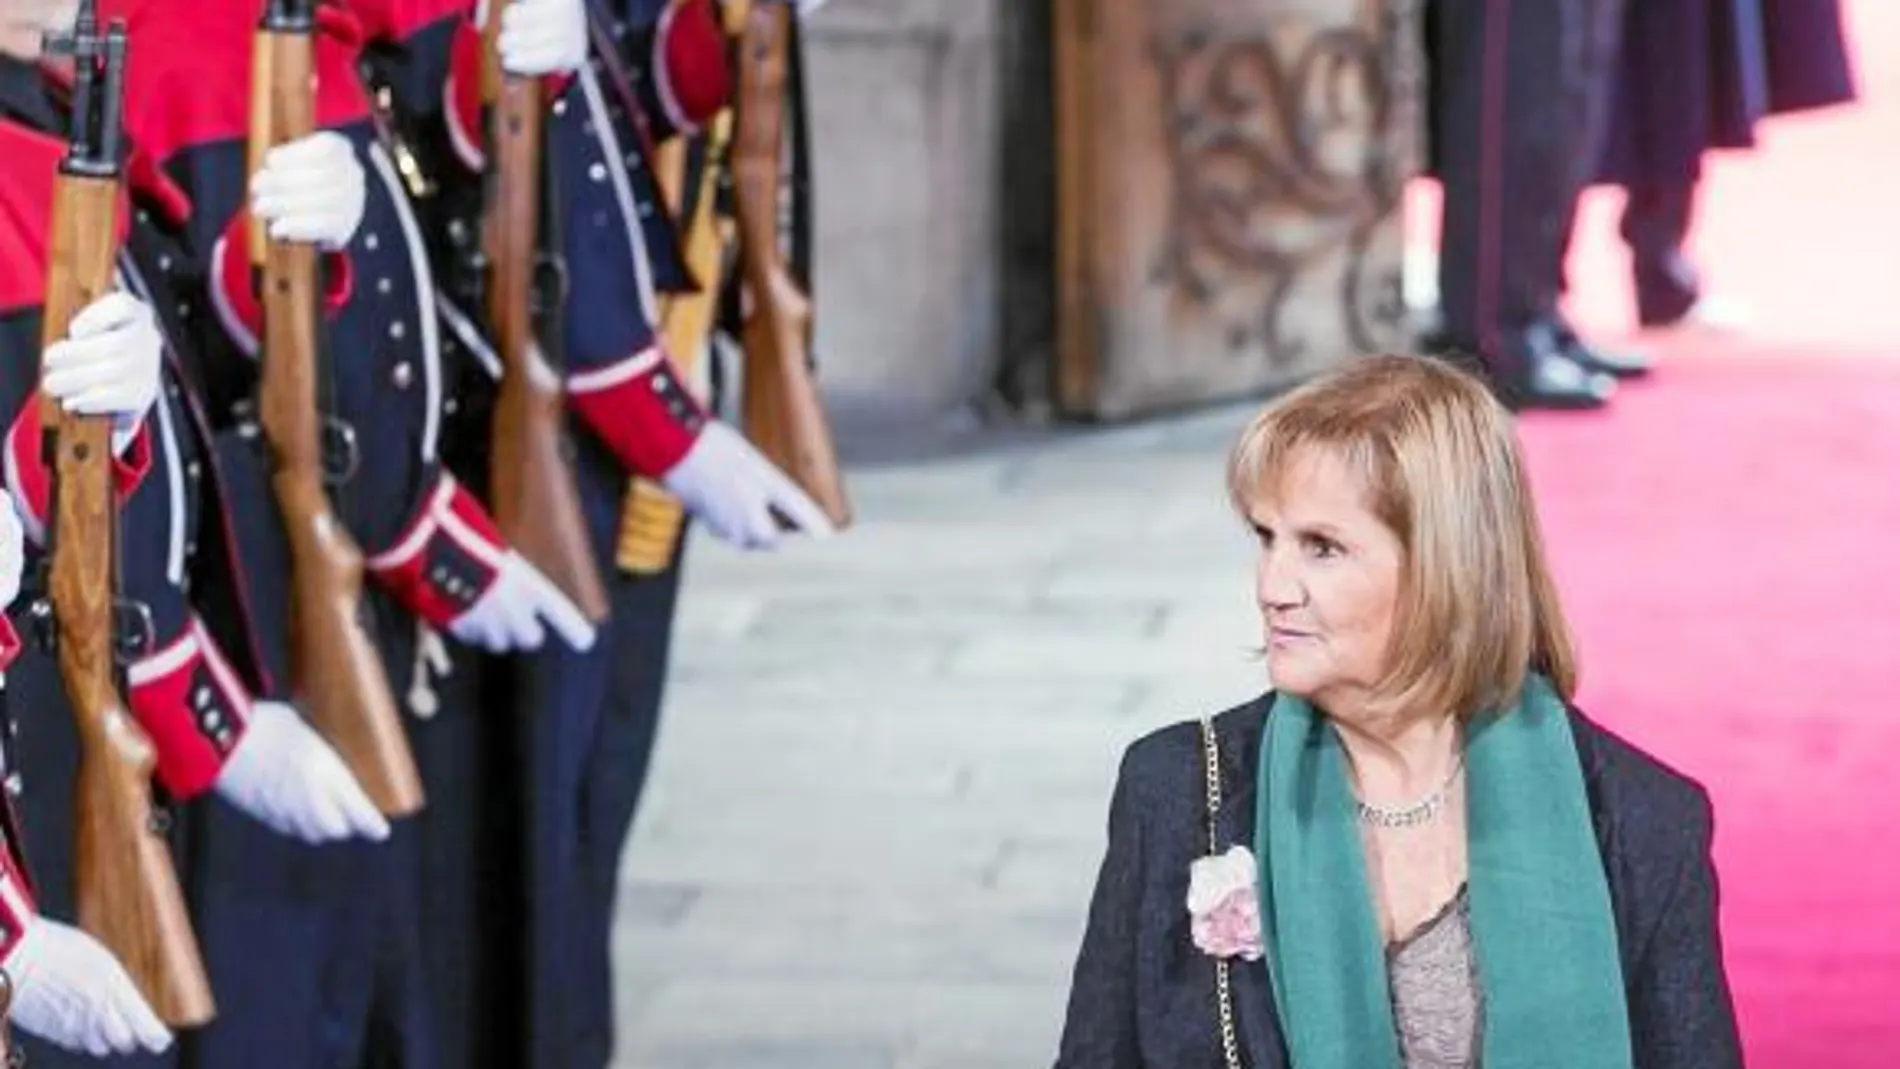 Núria de Gispert como presidenta del Parlament es la segunda autoridad política en Cataluña tras el presidente de la Generalitat